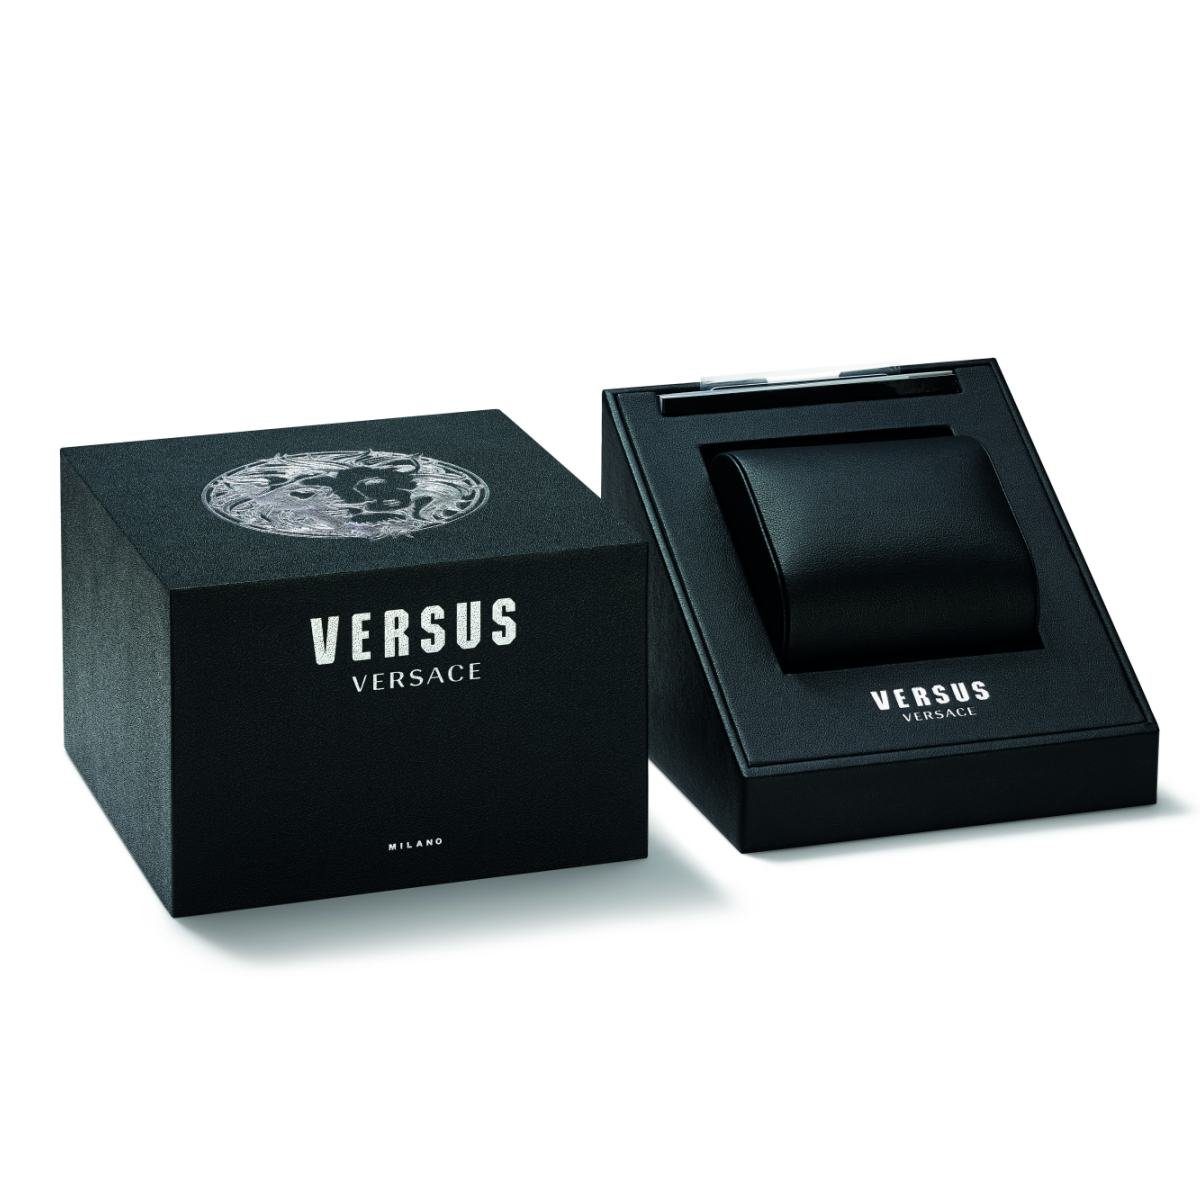 VSPEN2821 Versus Versace Quarzuhr